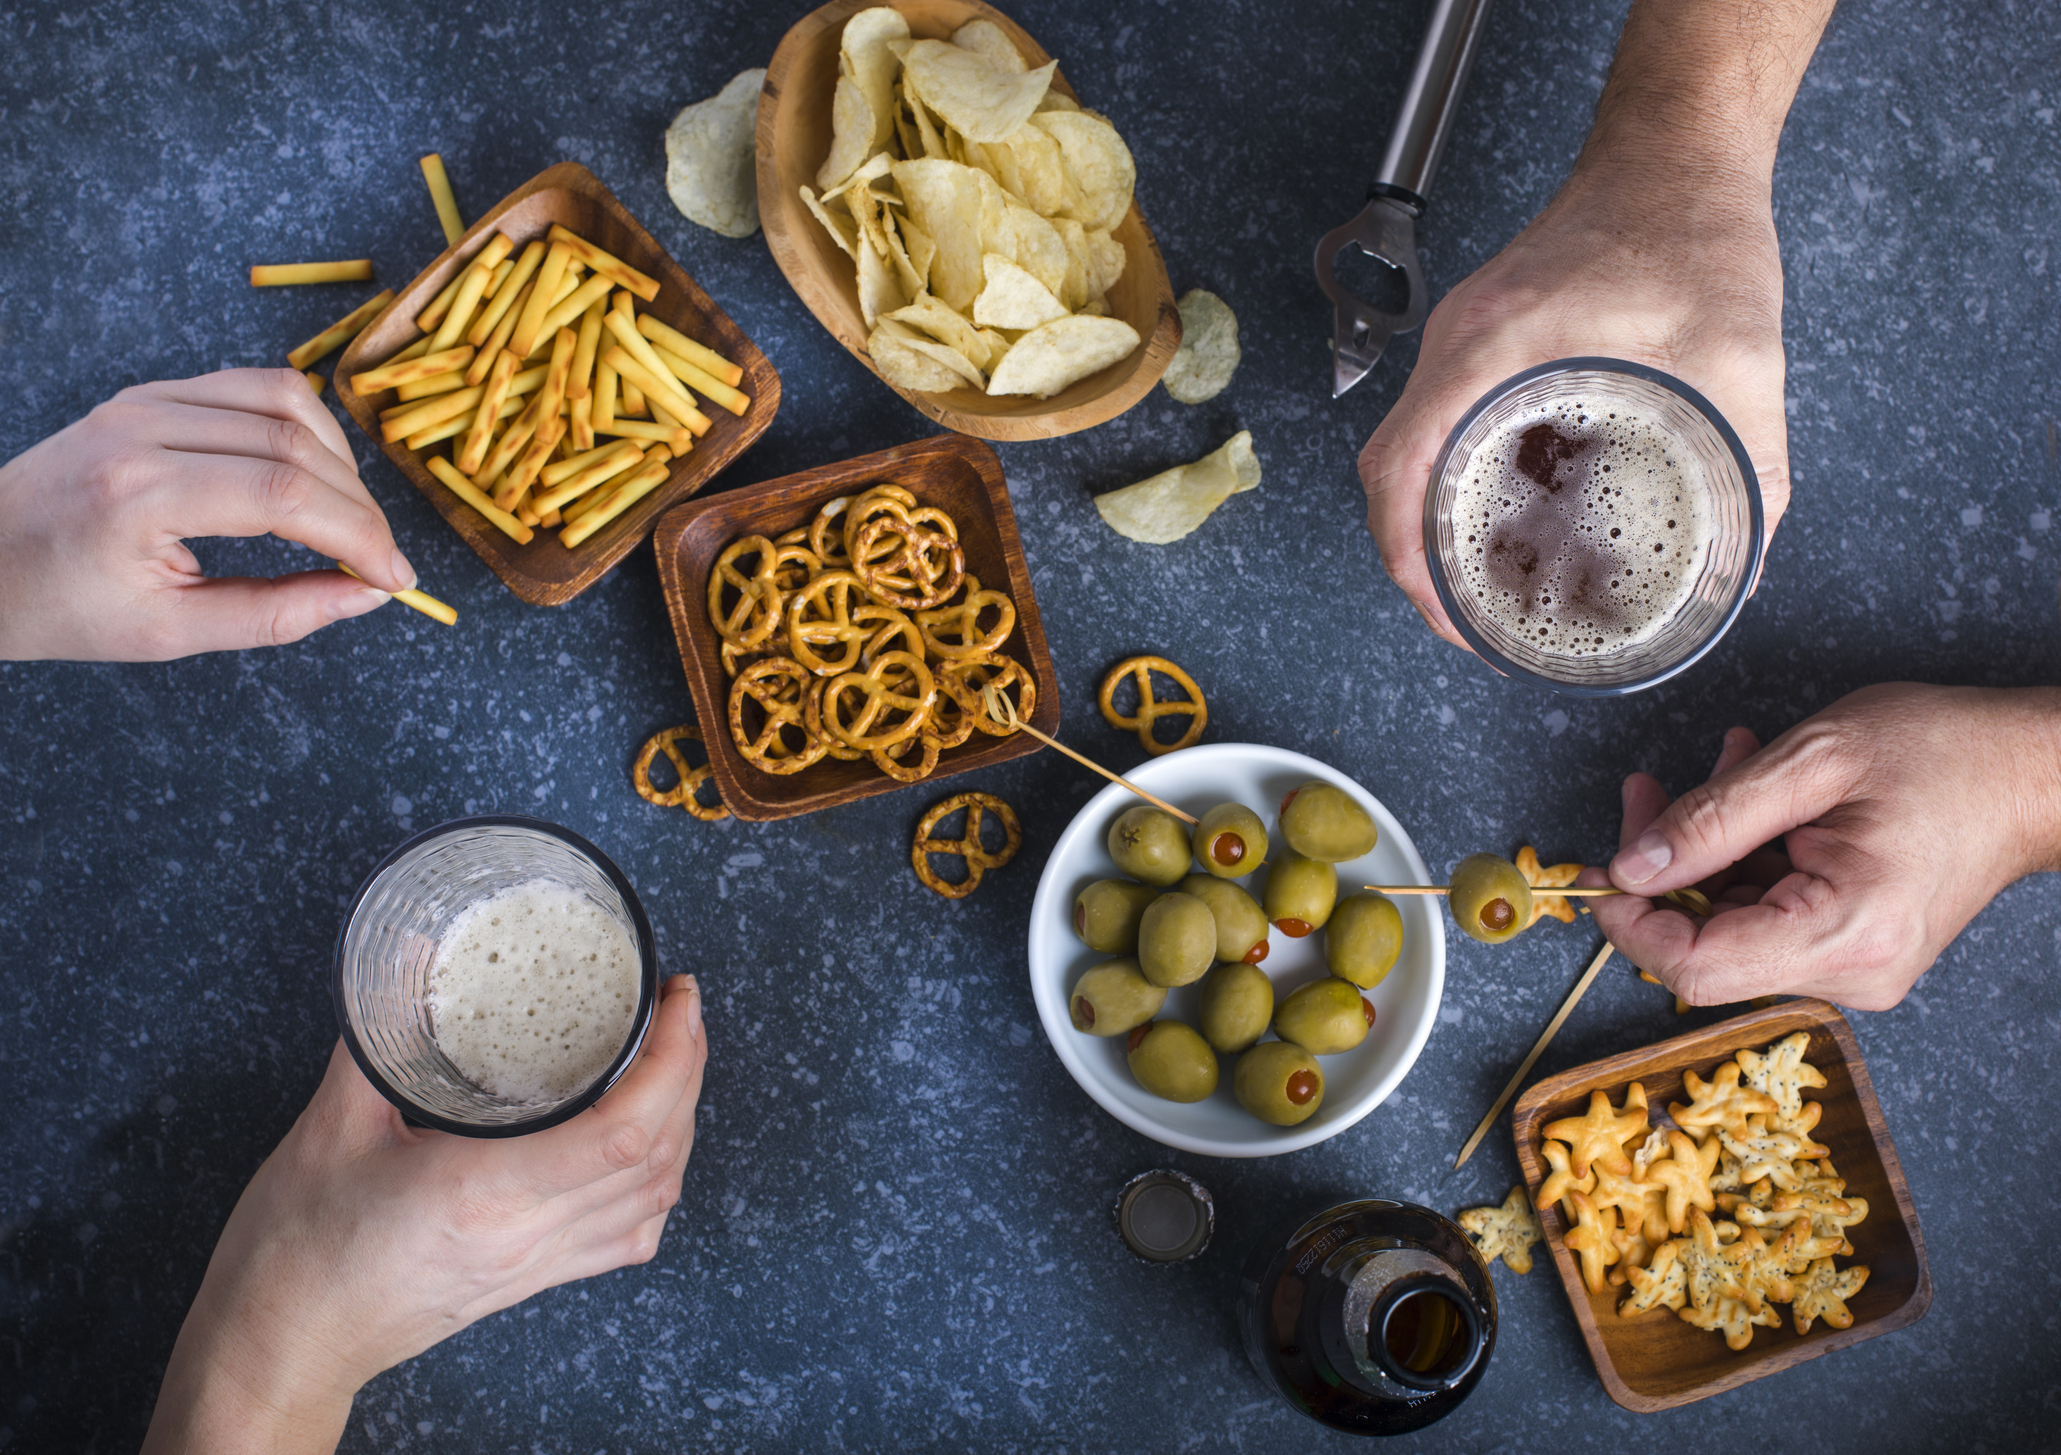 Efecto “aperitivo”: por qué nos atrae la comida chatarra cuando bebemos alcohol